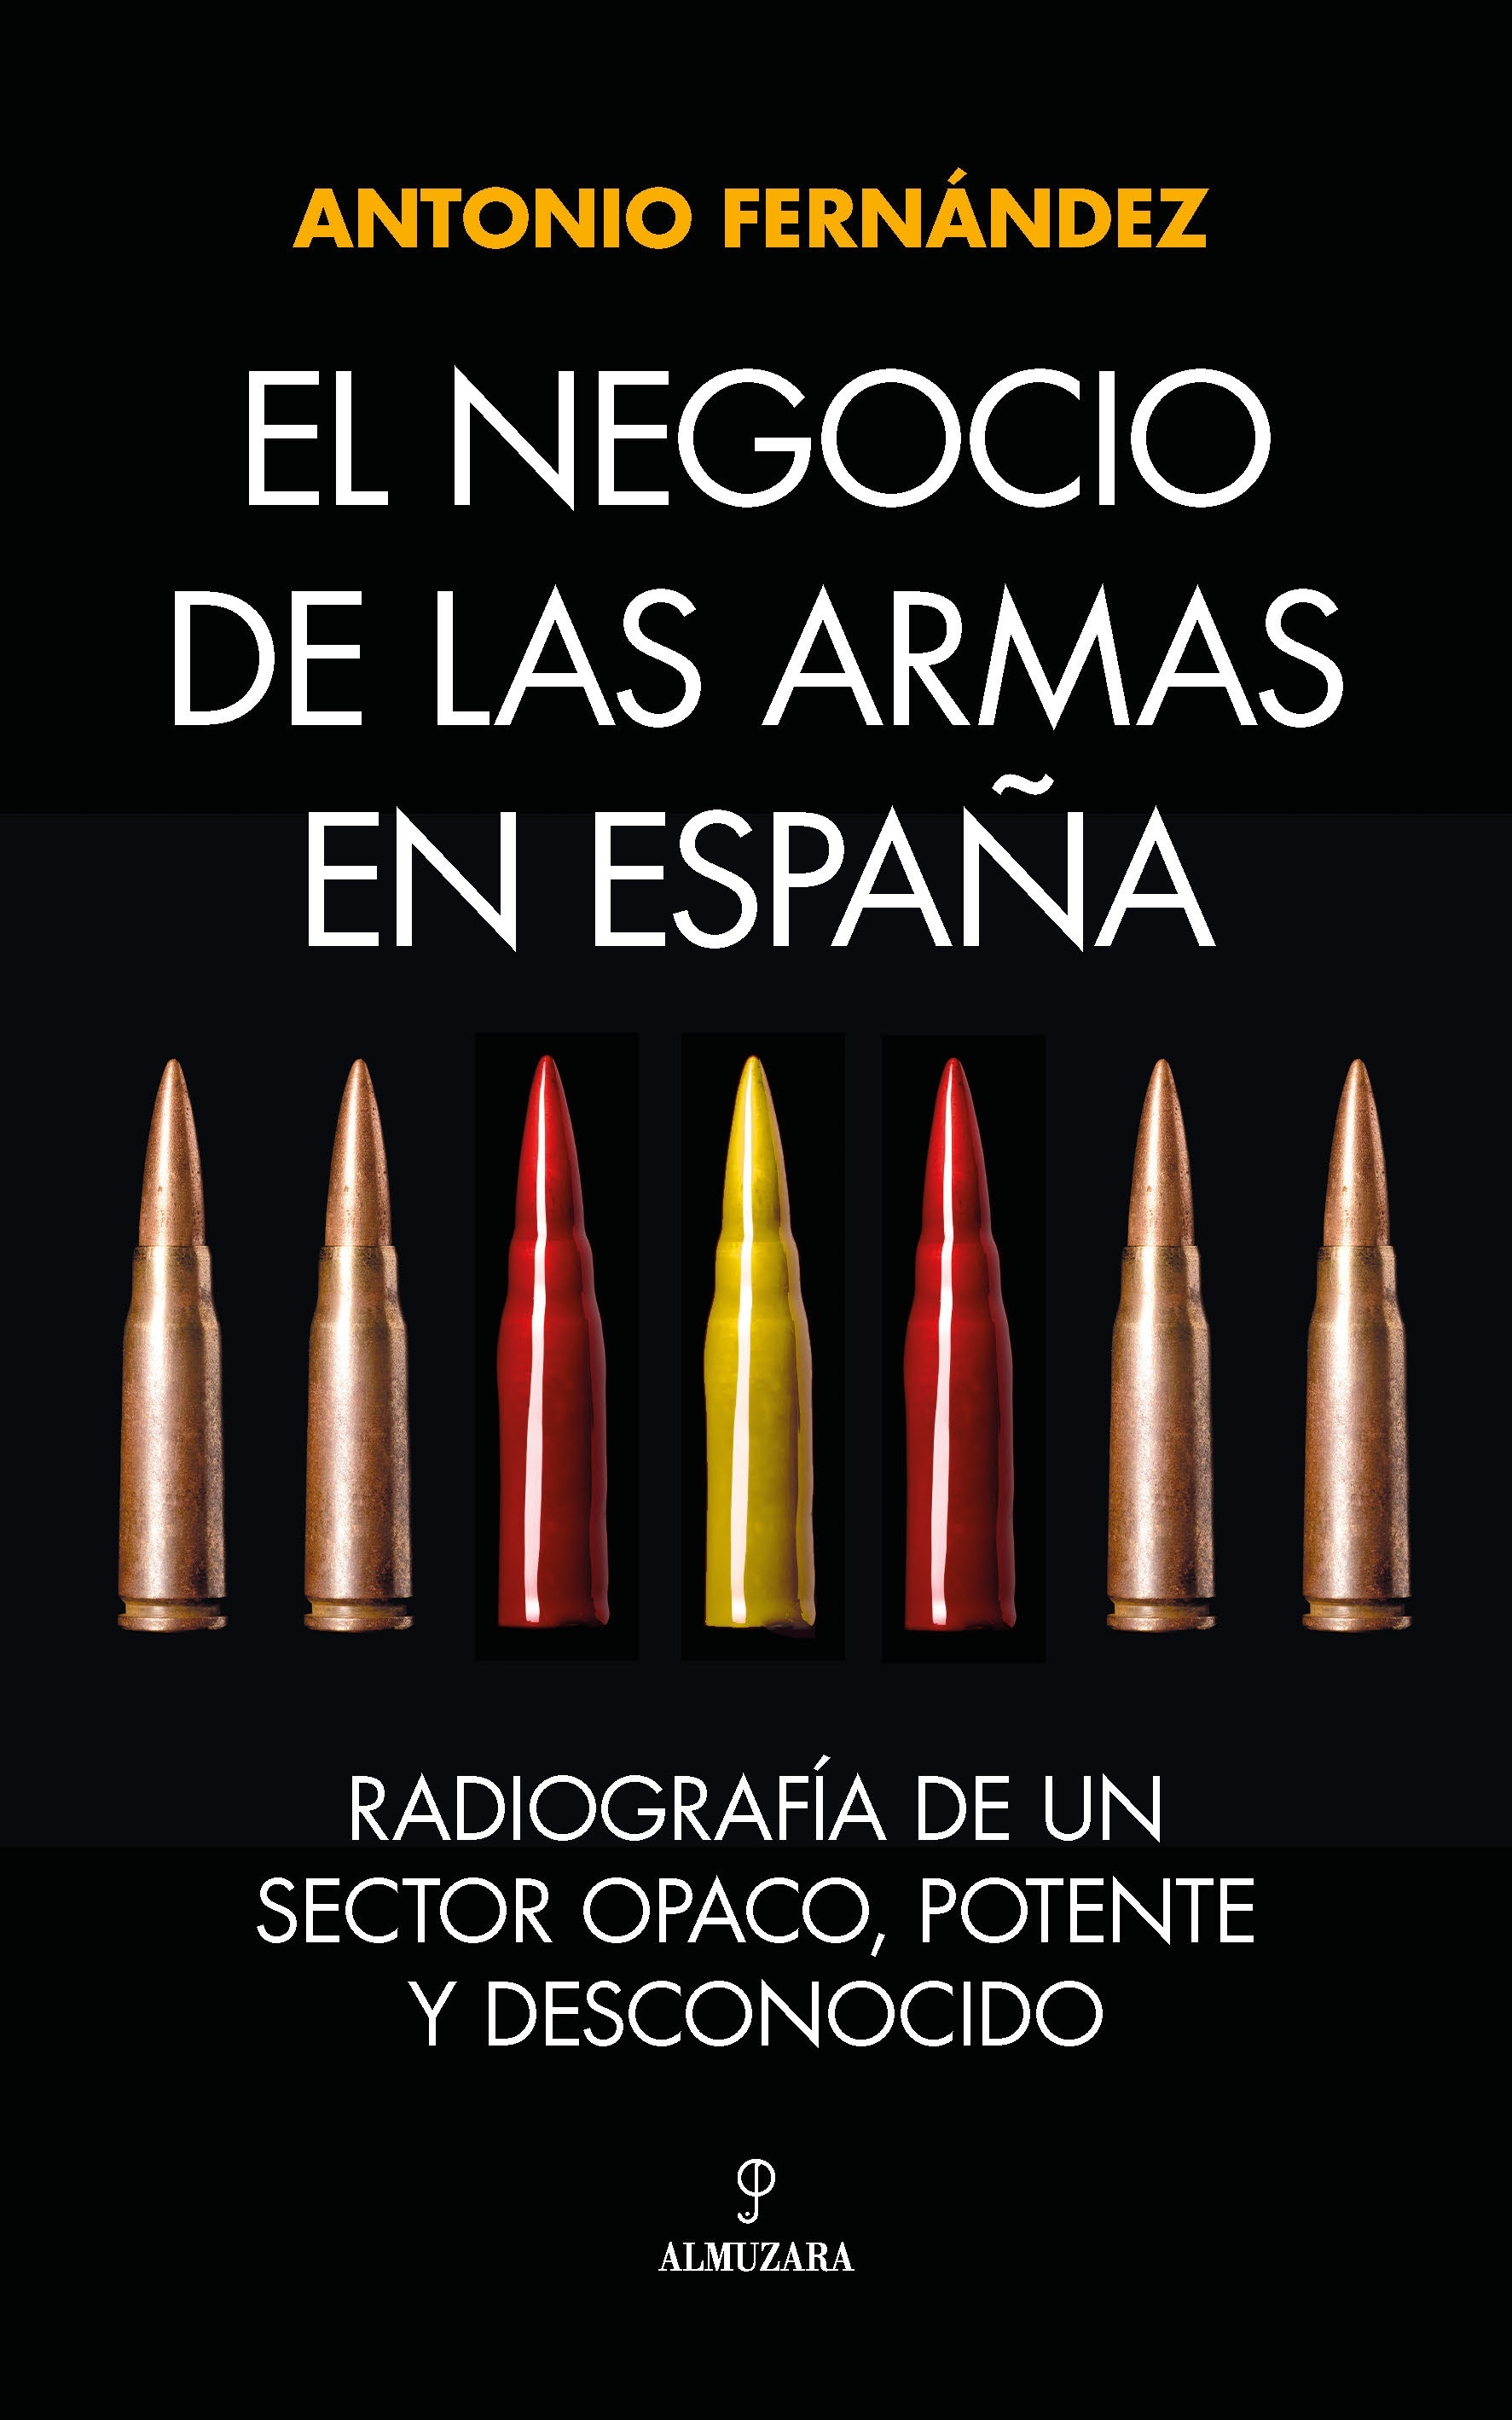 Negocio de las armas en España, El "Radiografía de un sector opaco, potente y desconocido". 